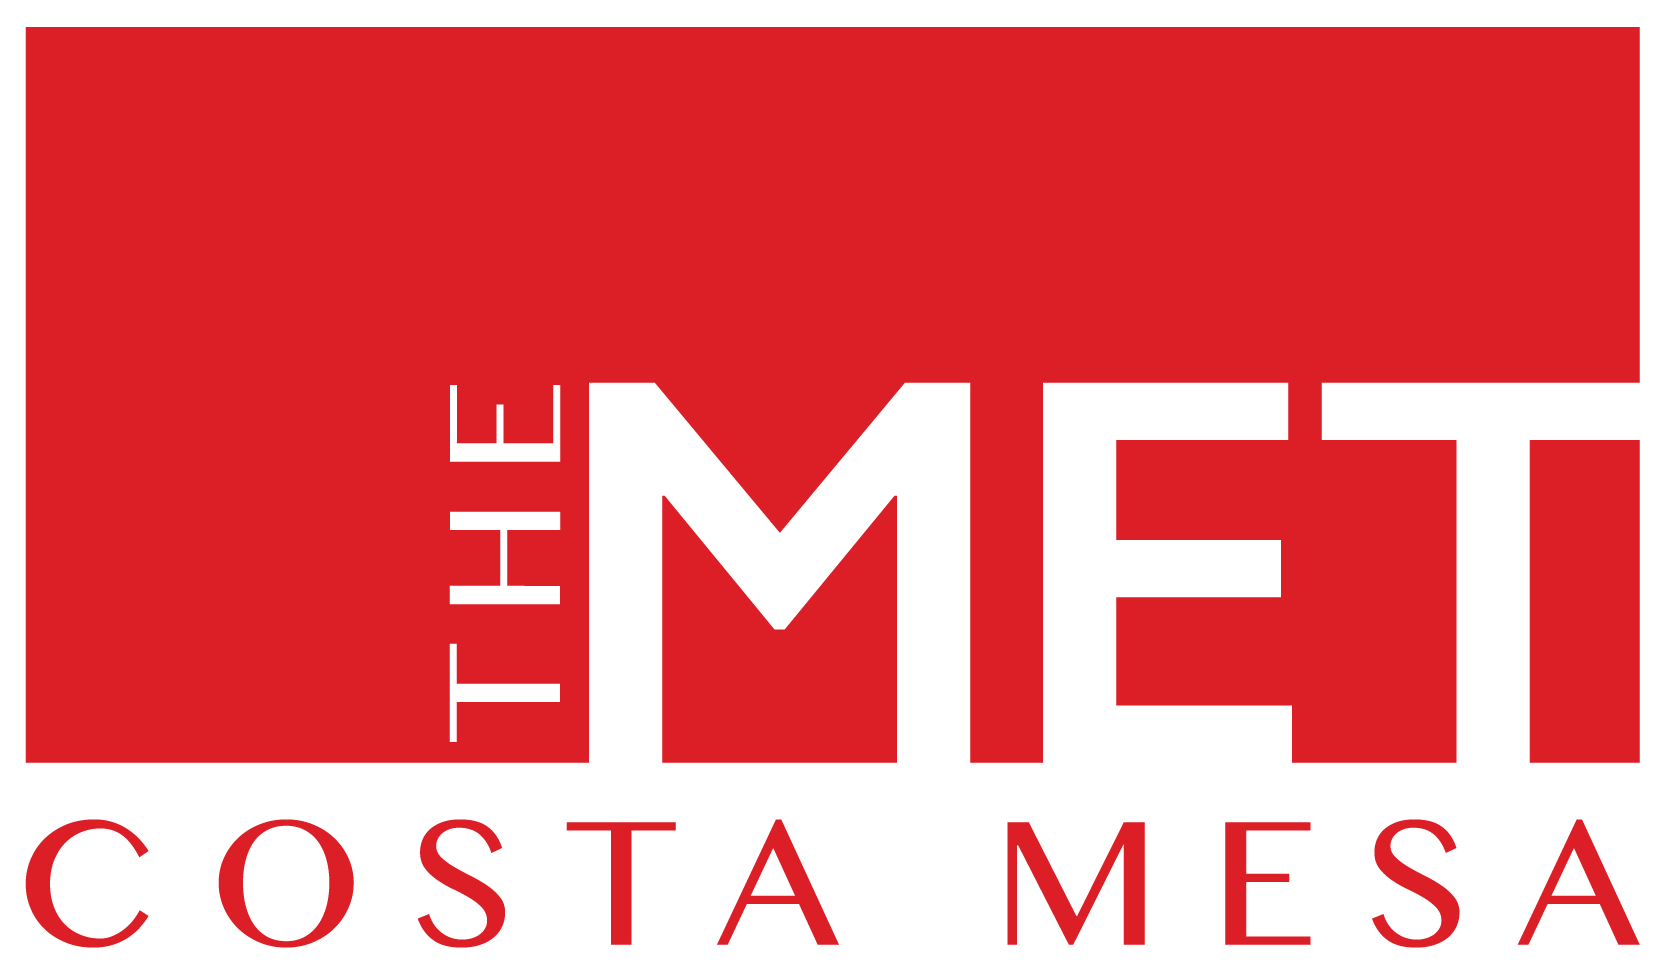 The MET